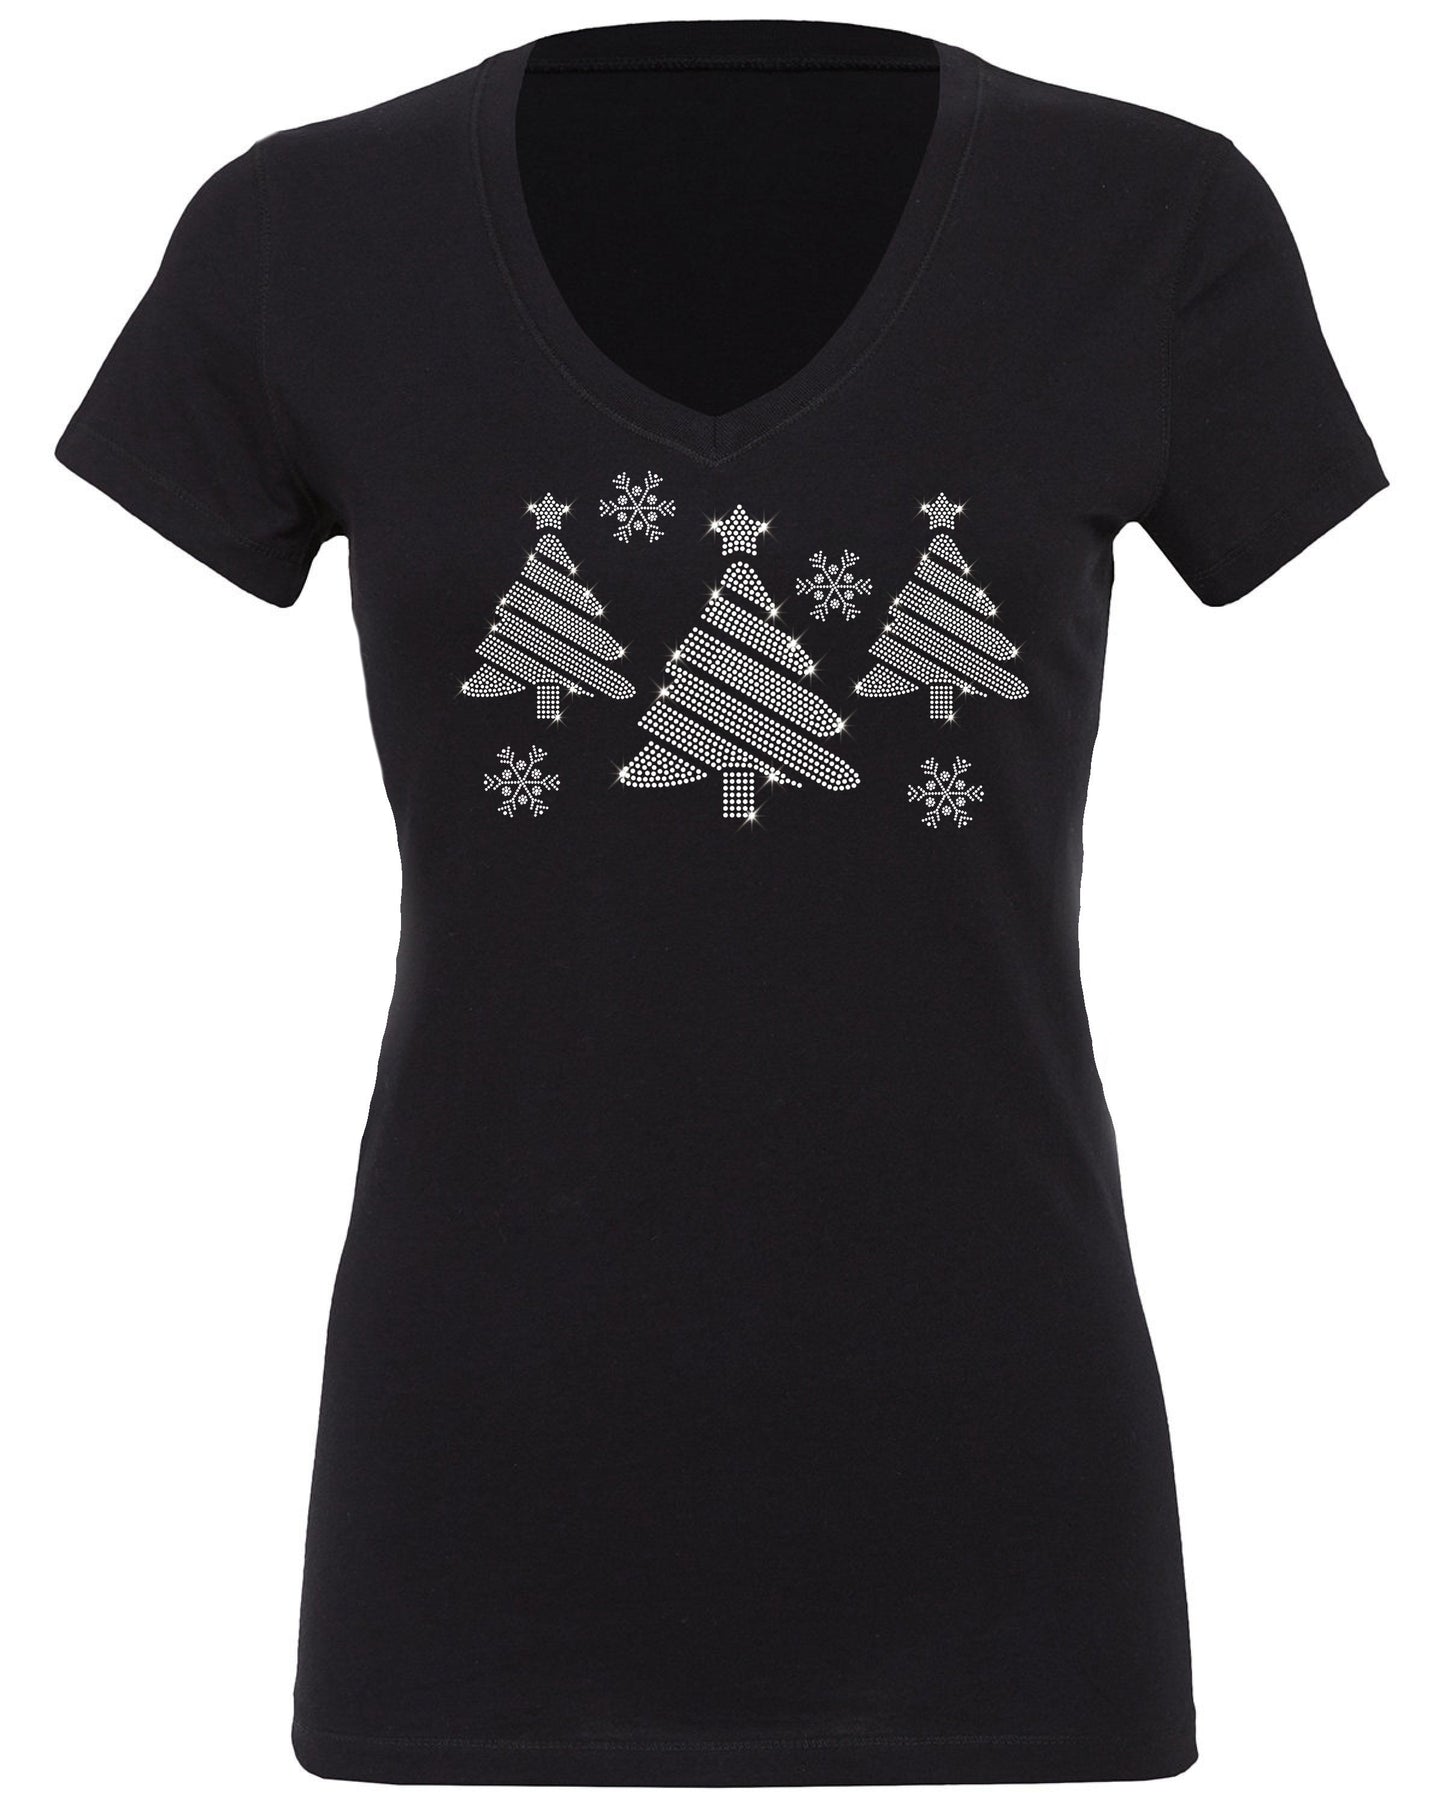 Rhinestone Christmas Tree Scene T-Shirt